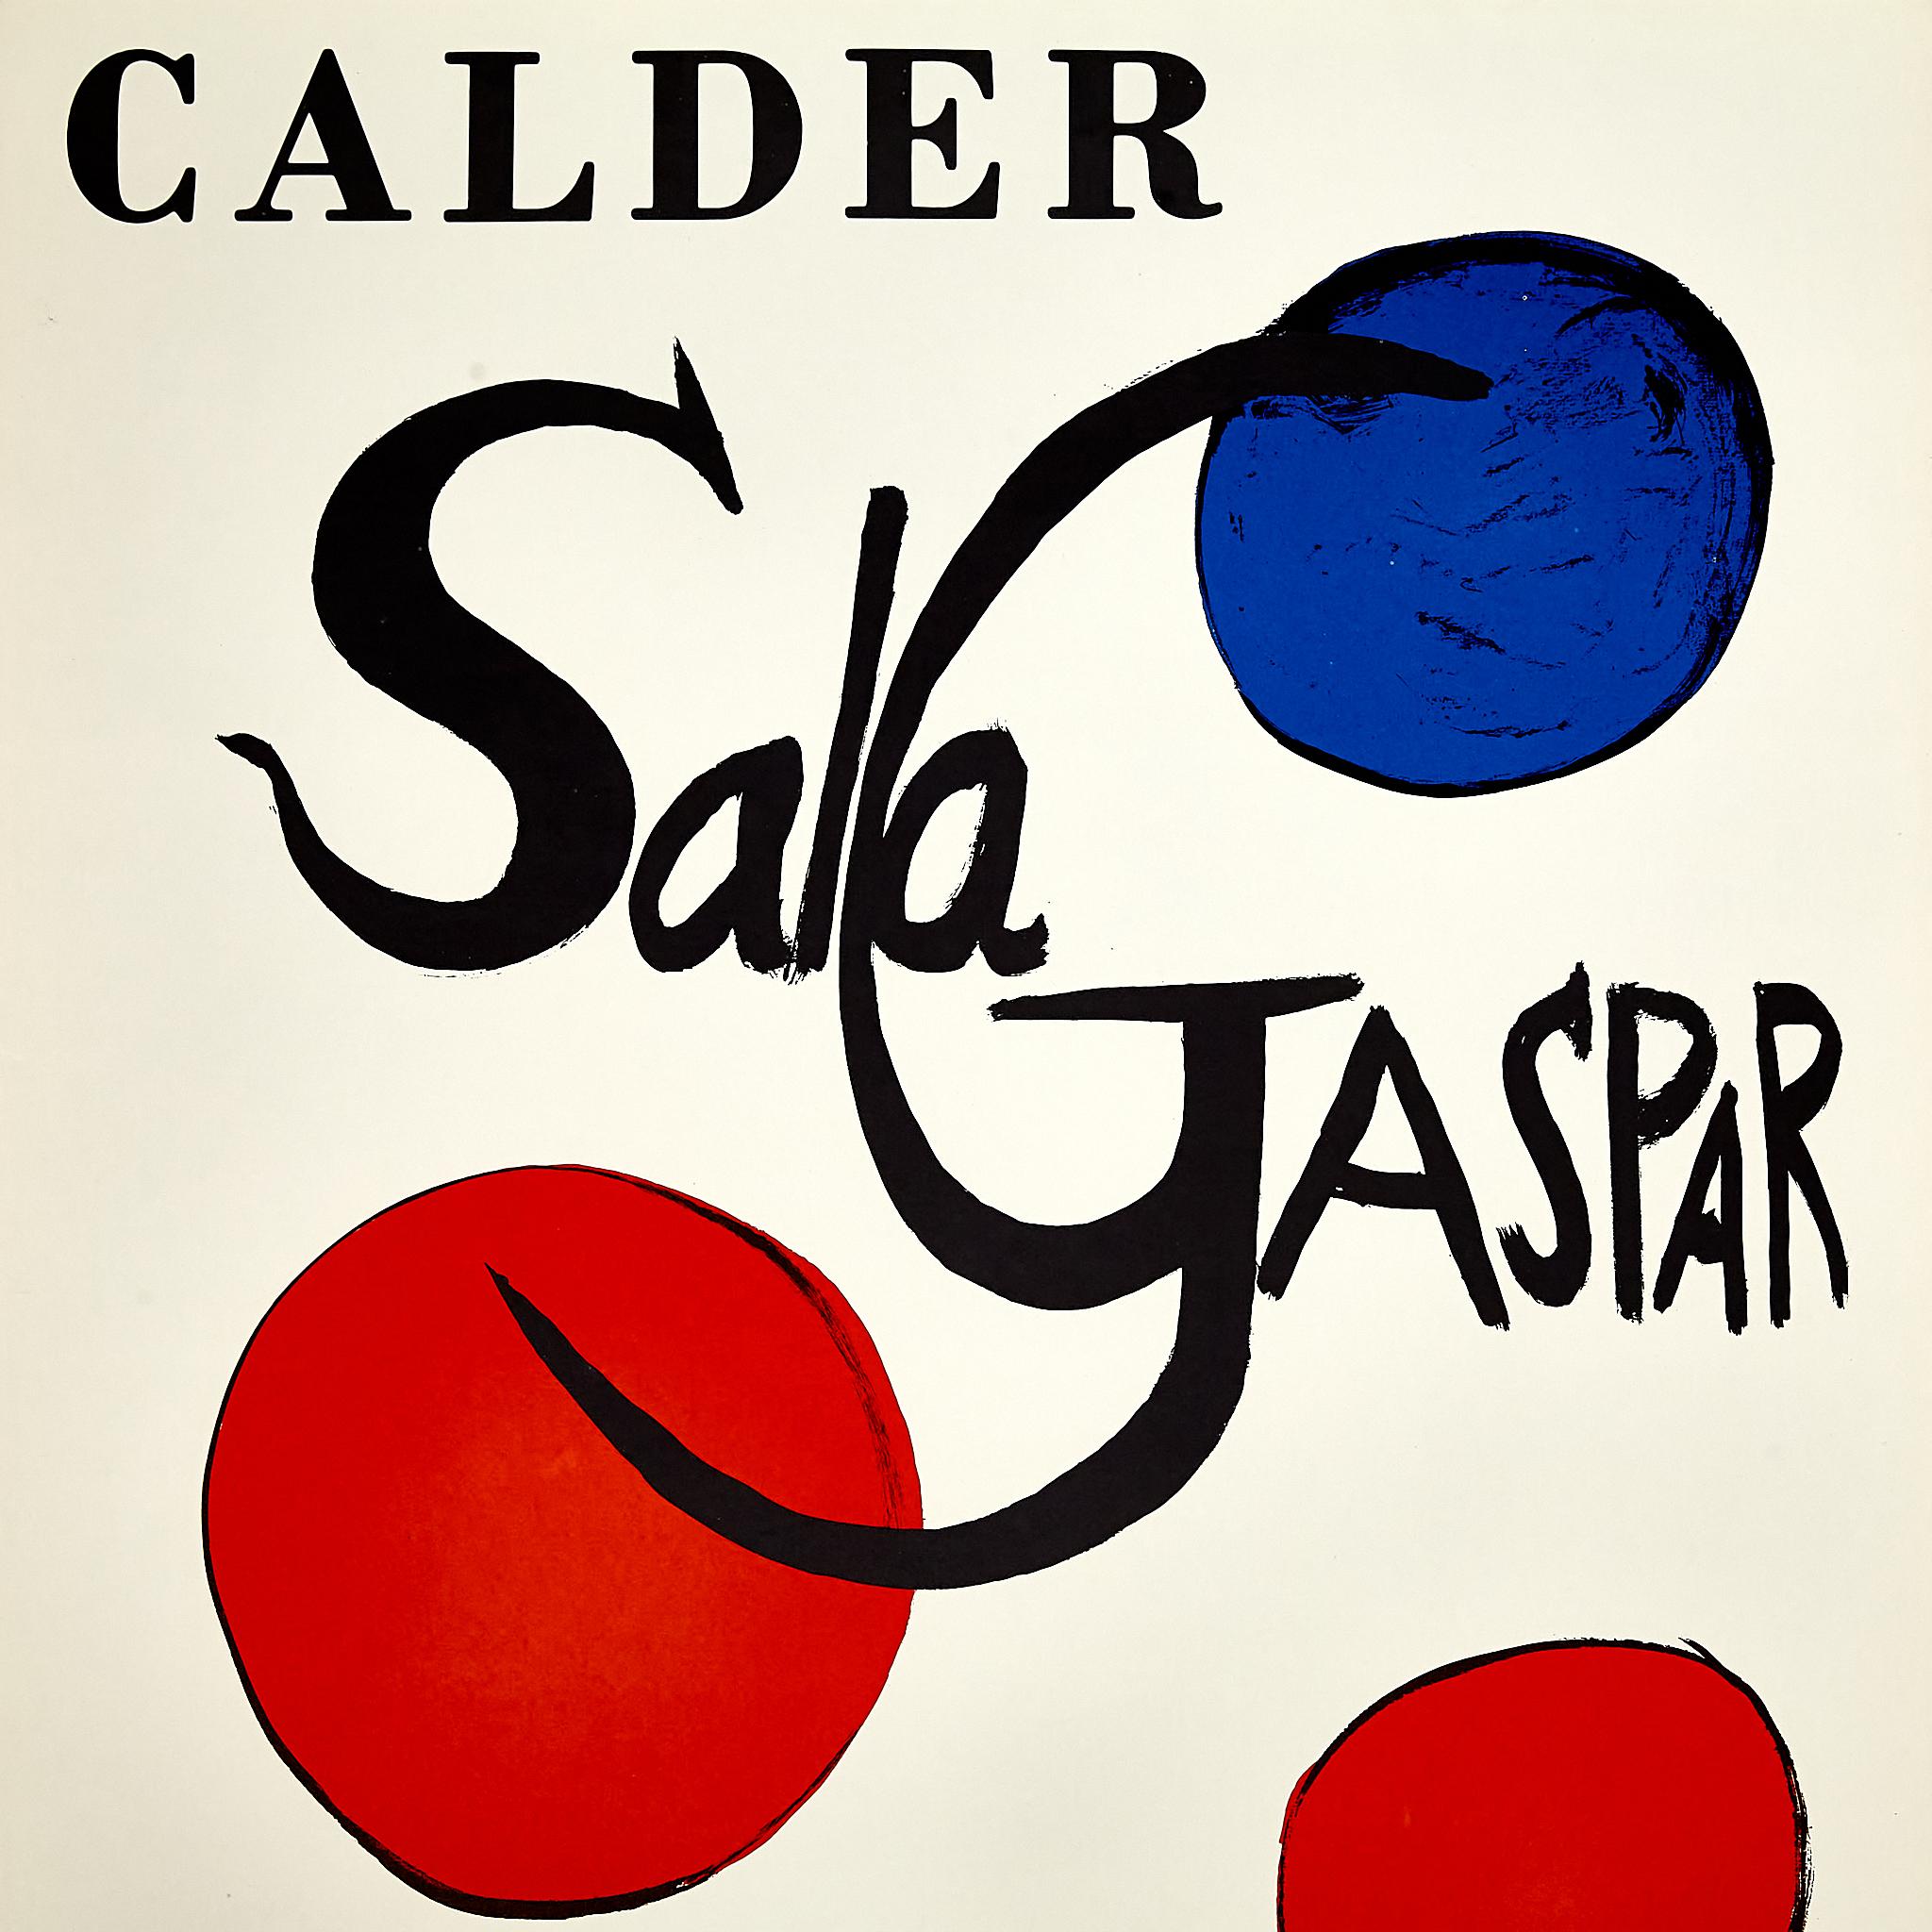 Paper Captivating Calder Art: Original 1973 Sala Gaspar Exhibition Poster  For Sale